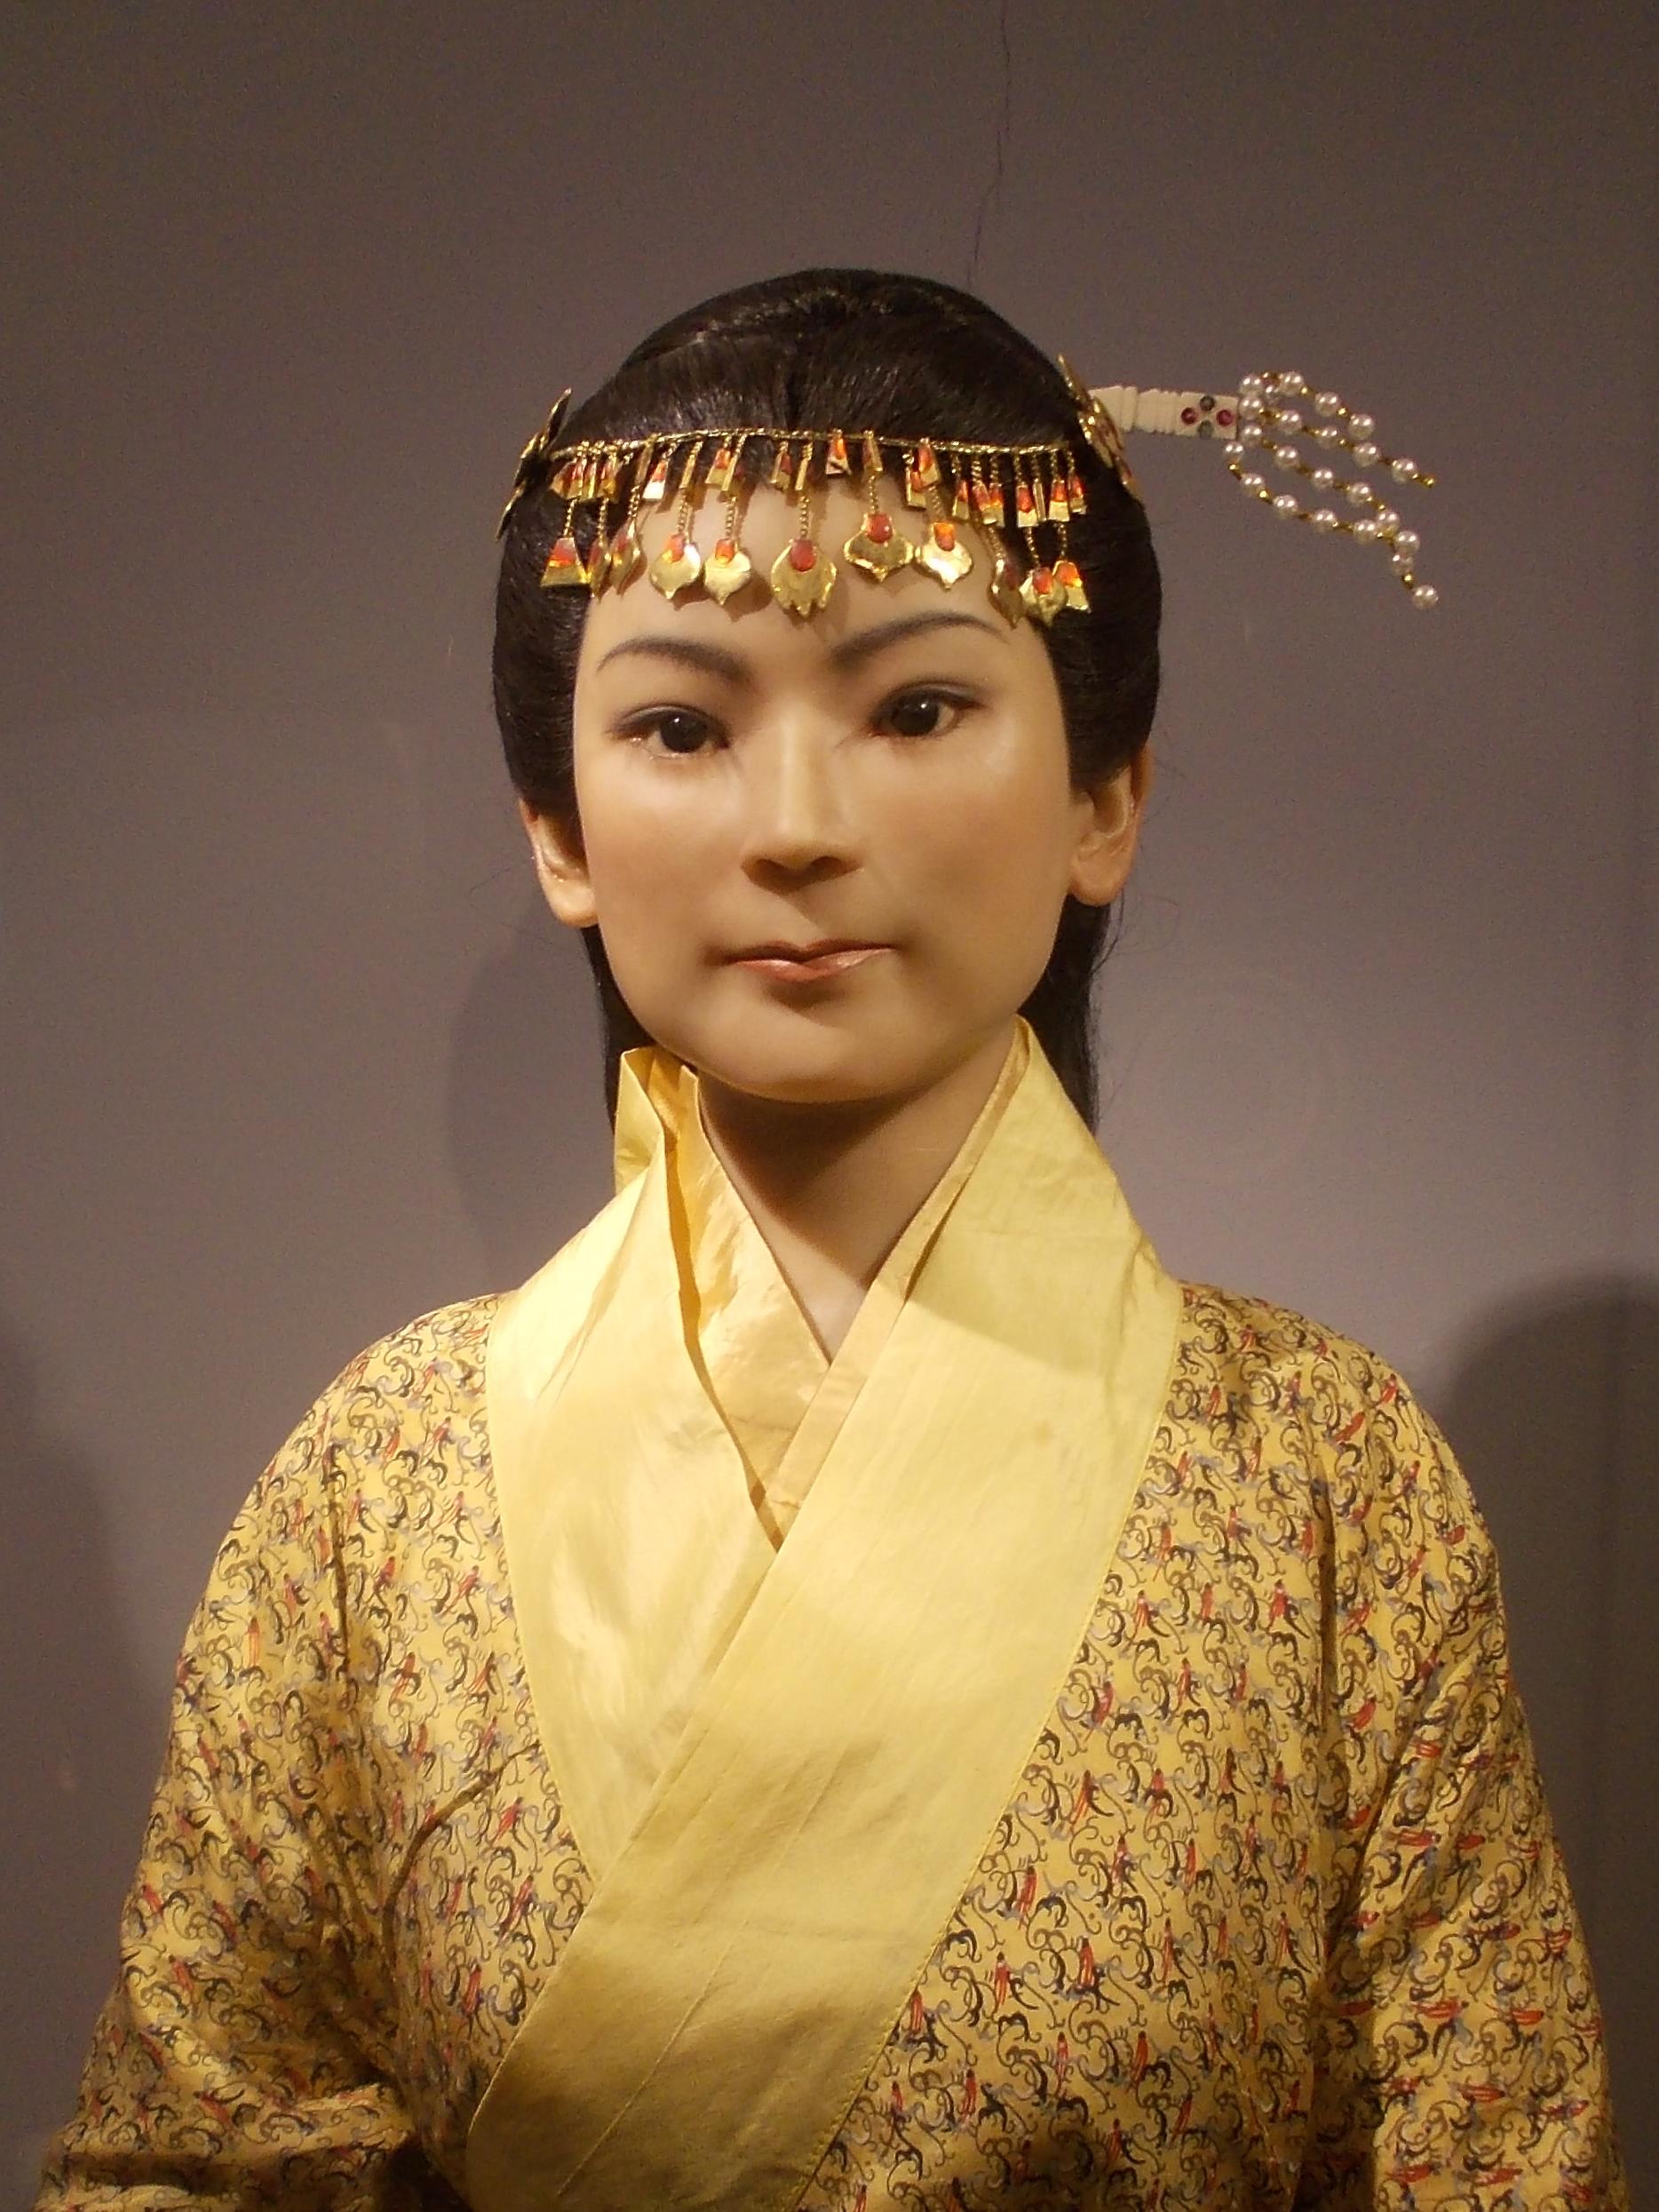 直裾素纱襌衣,马王堆汉墓的众多随葬品之一,为禁止出国(境)展览文物